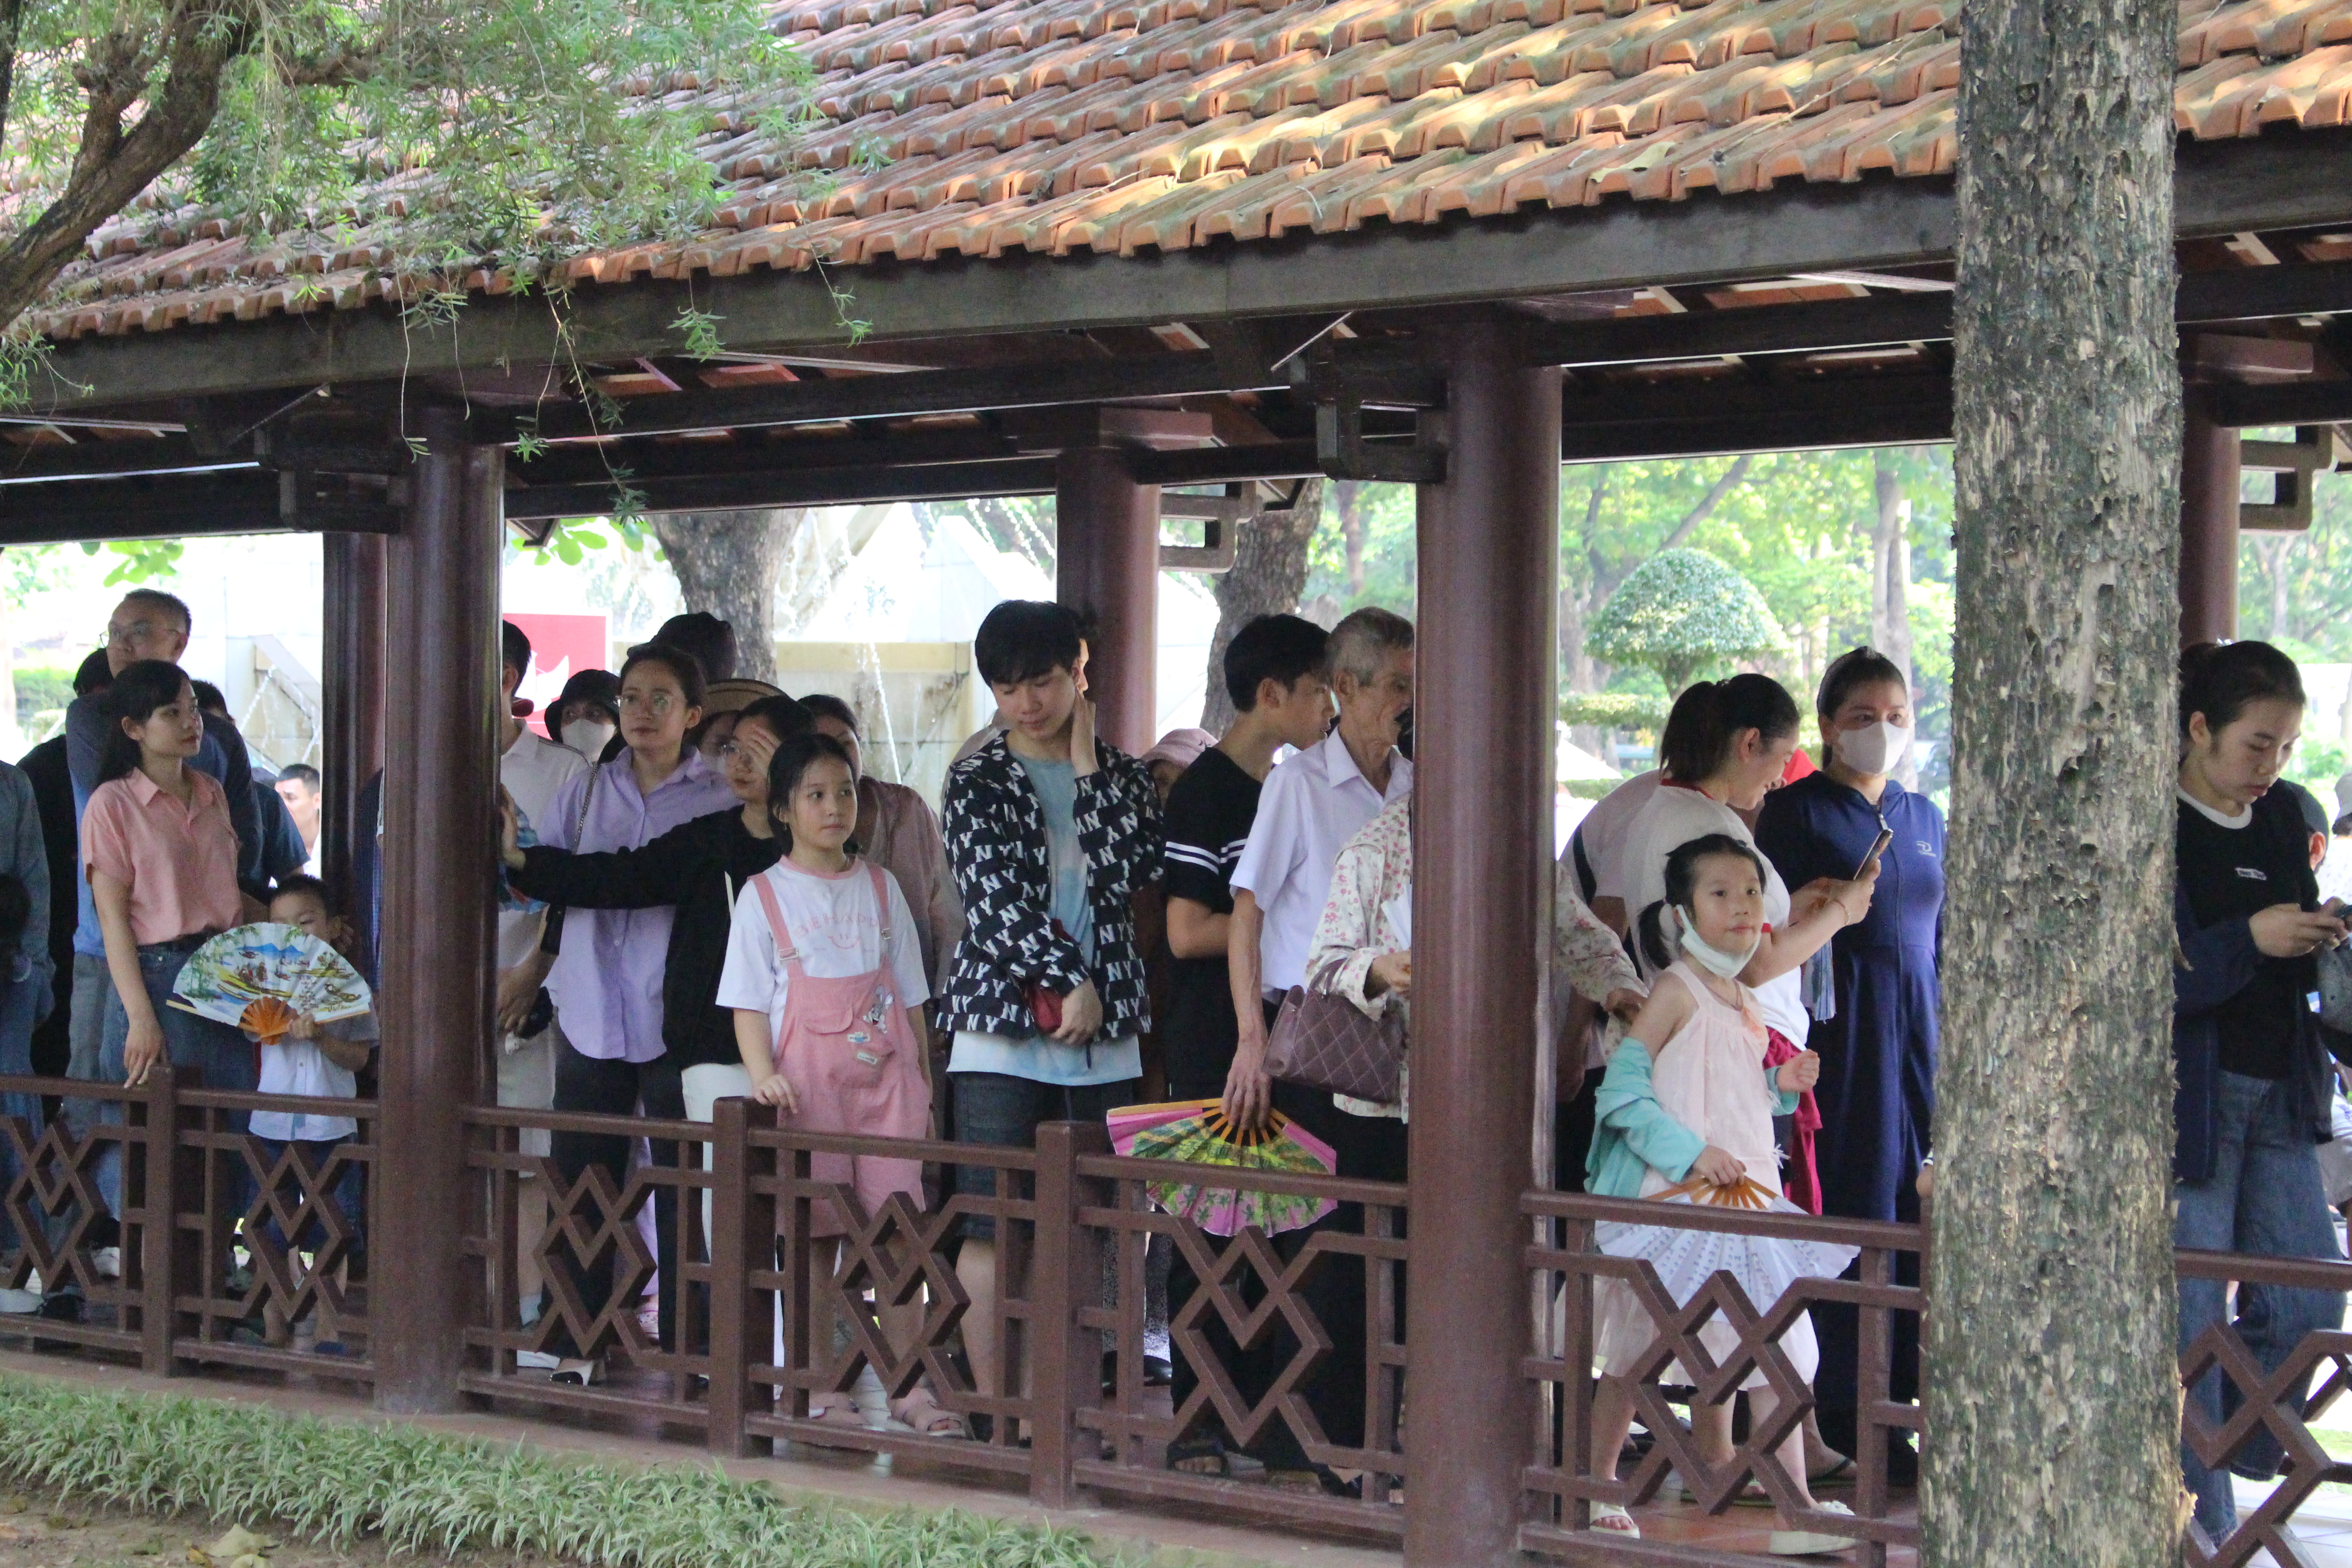 Dù thời tiết vào hè khá oi, nóng nhưng người dân vẫn tuân thủ xếp hàng rất văn minh theo quy định của Ban Quản lý Lăng Chủ tịch Hồ Chí Minh. 